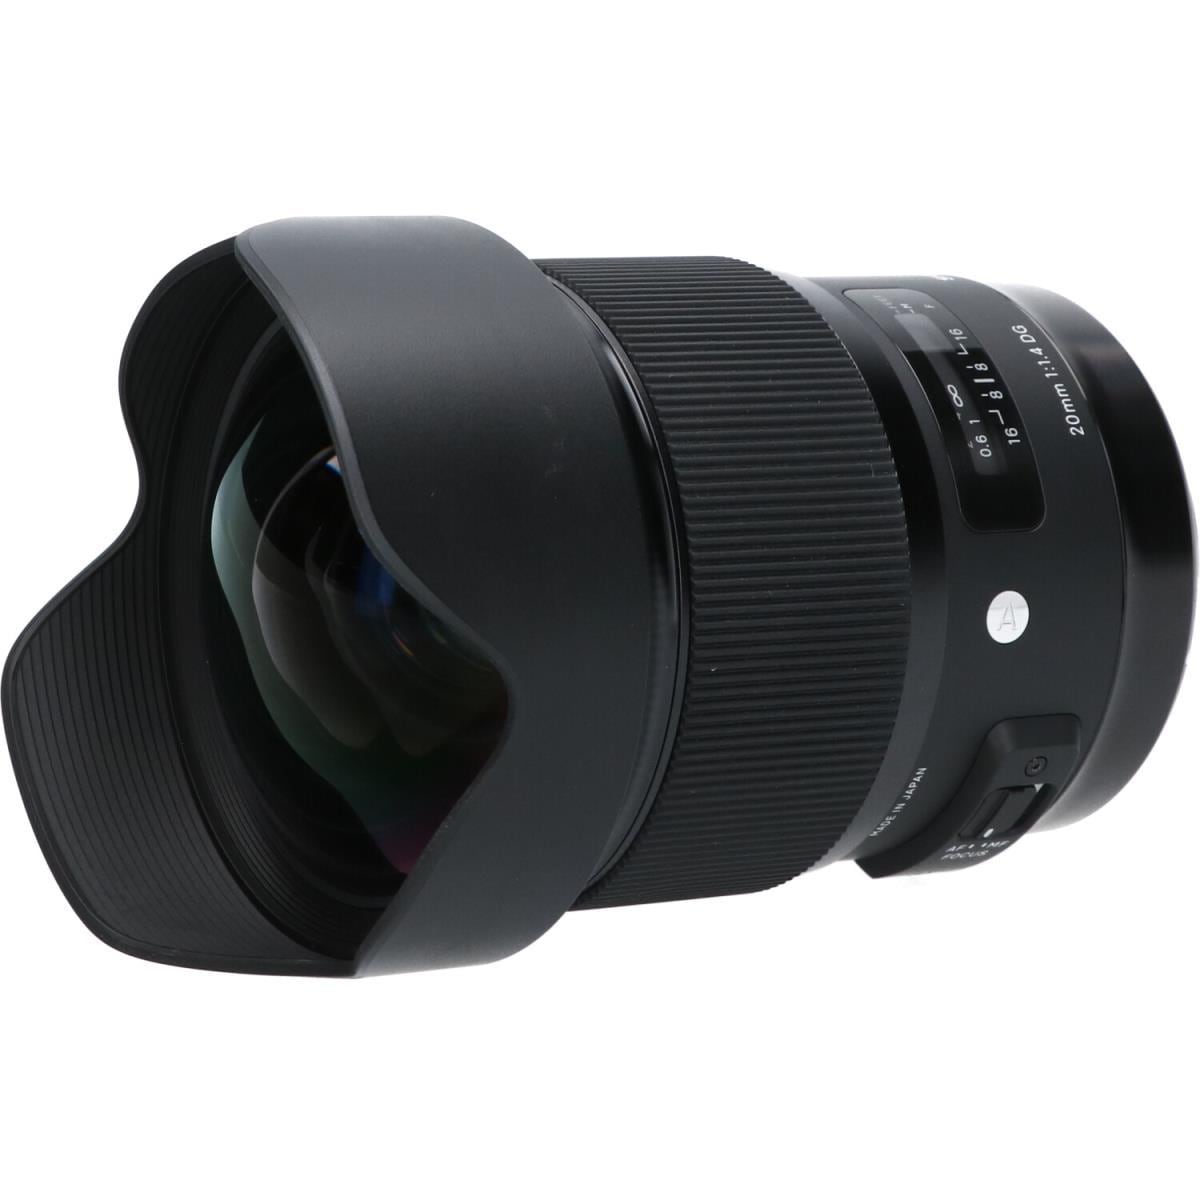 日本特注 SONY用 単焦点広角レンズ 20mm F1.4 DG HSM SIGMA - カメラ